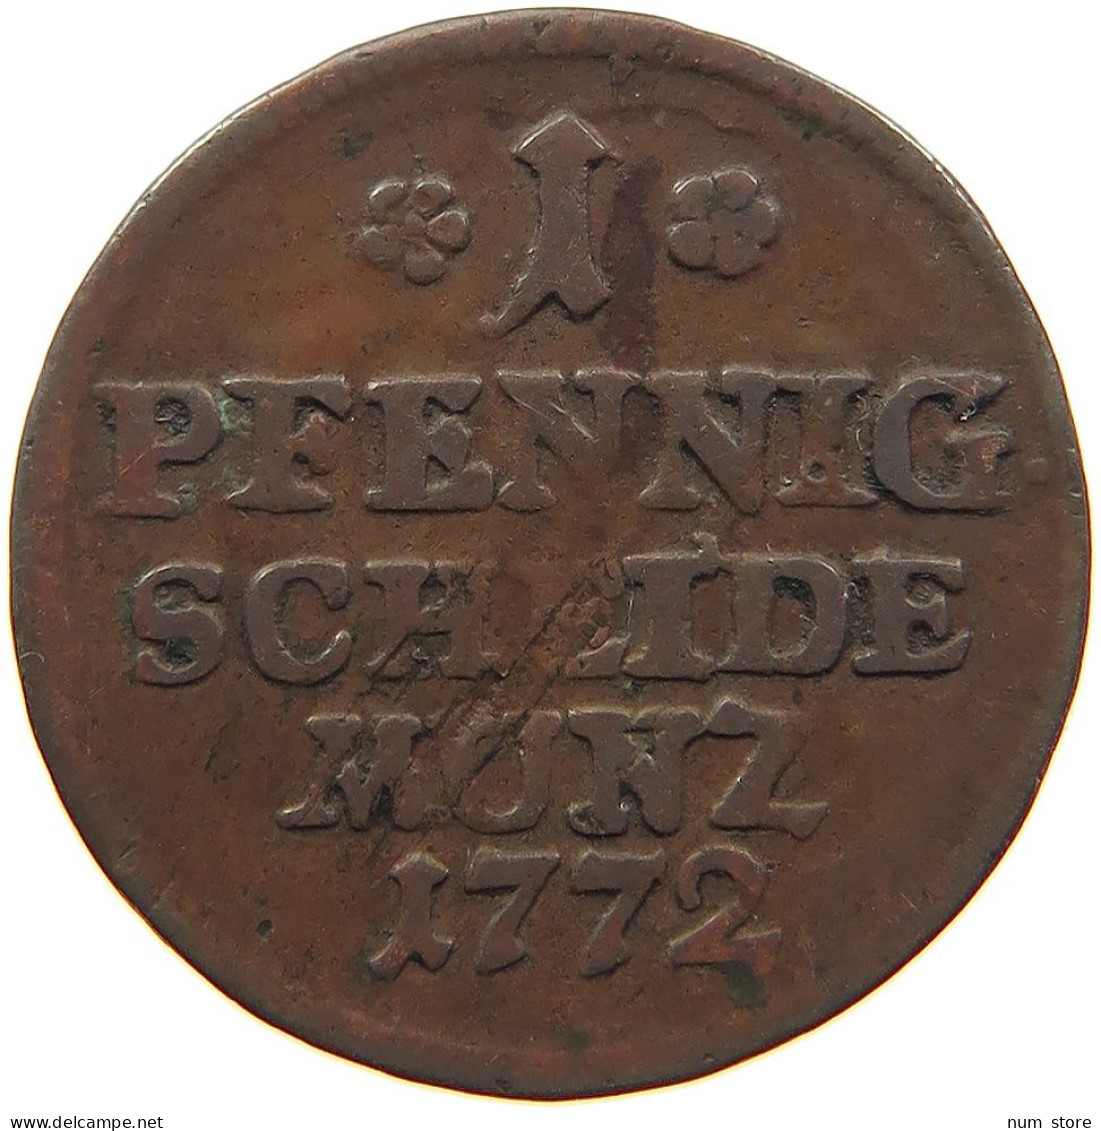 GERMAN STATES 1 PFENNIG 1772 SACHSEN COBURG SAALFELD Ernst Friedrich, 1764 - 1800 #t032 0717 - Groschen & Andere Kleinmünzen